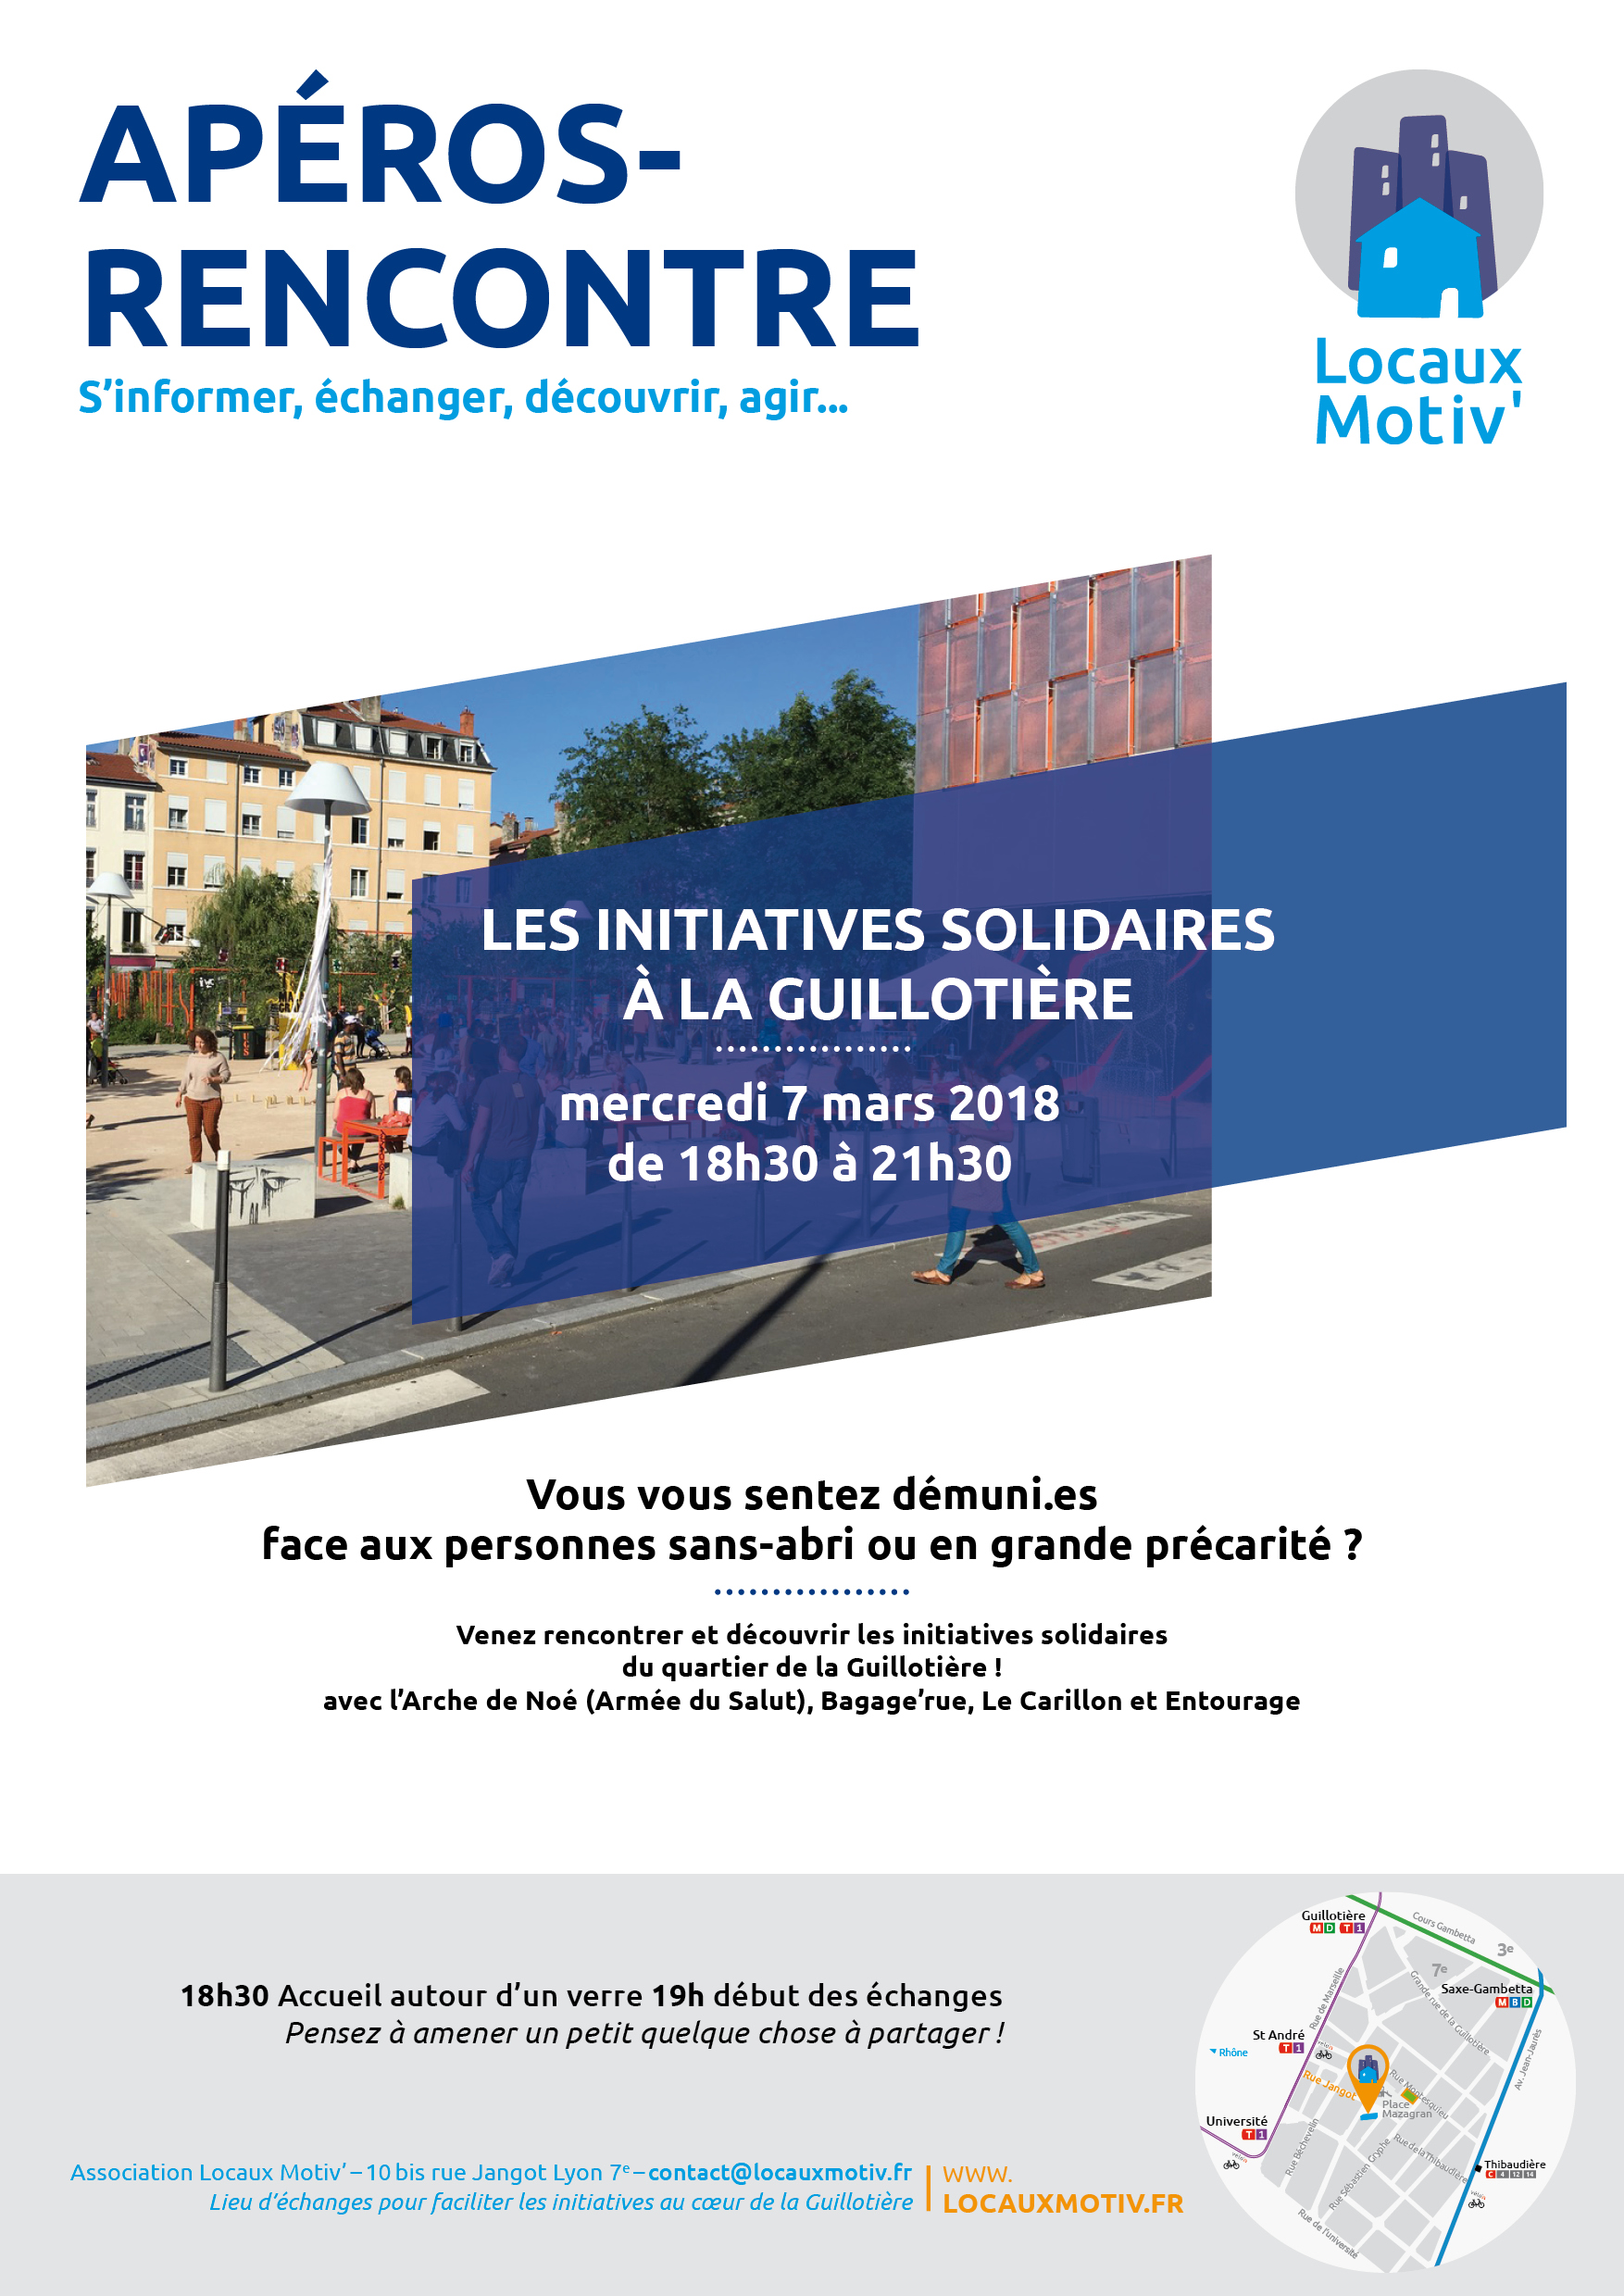 Atelier-Rencontres "Les initiatives solidaires à la Guillotière" - le 7 mars 2018